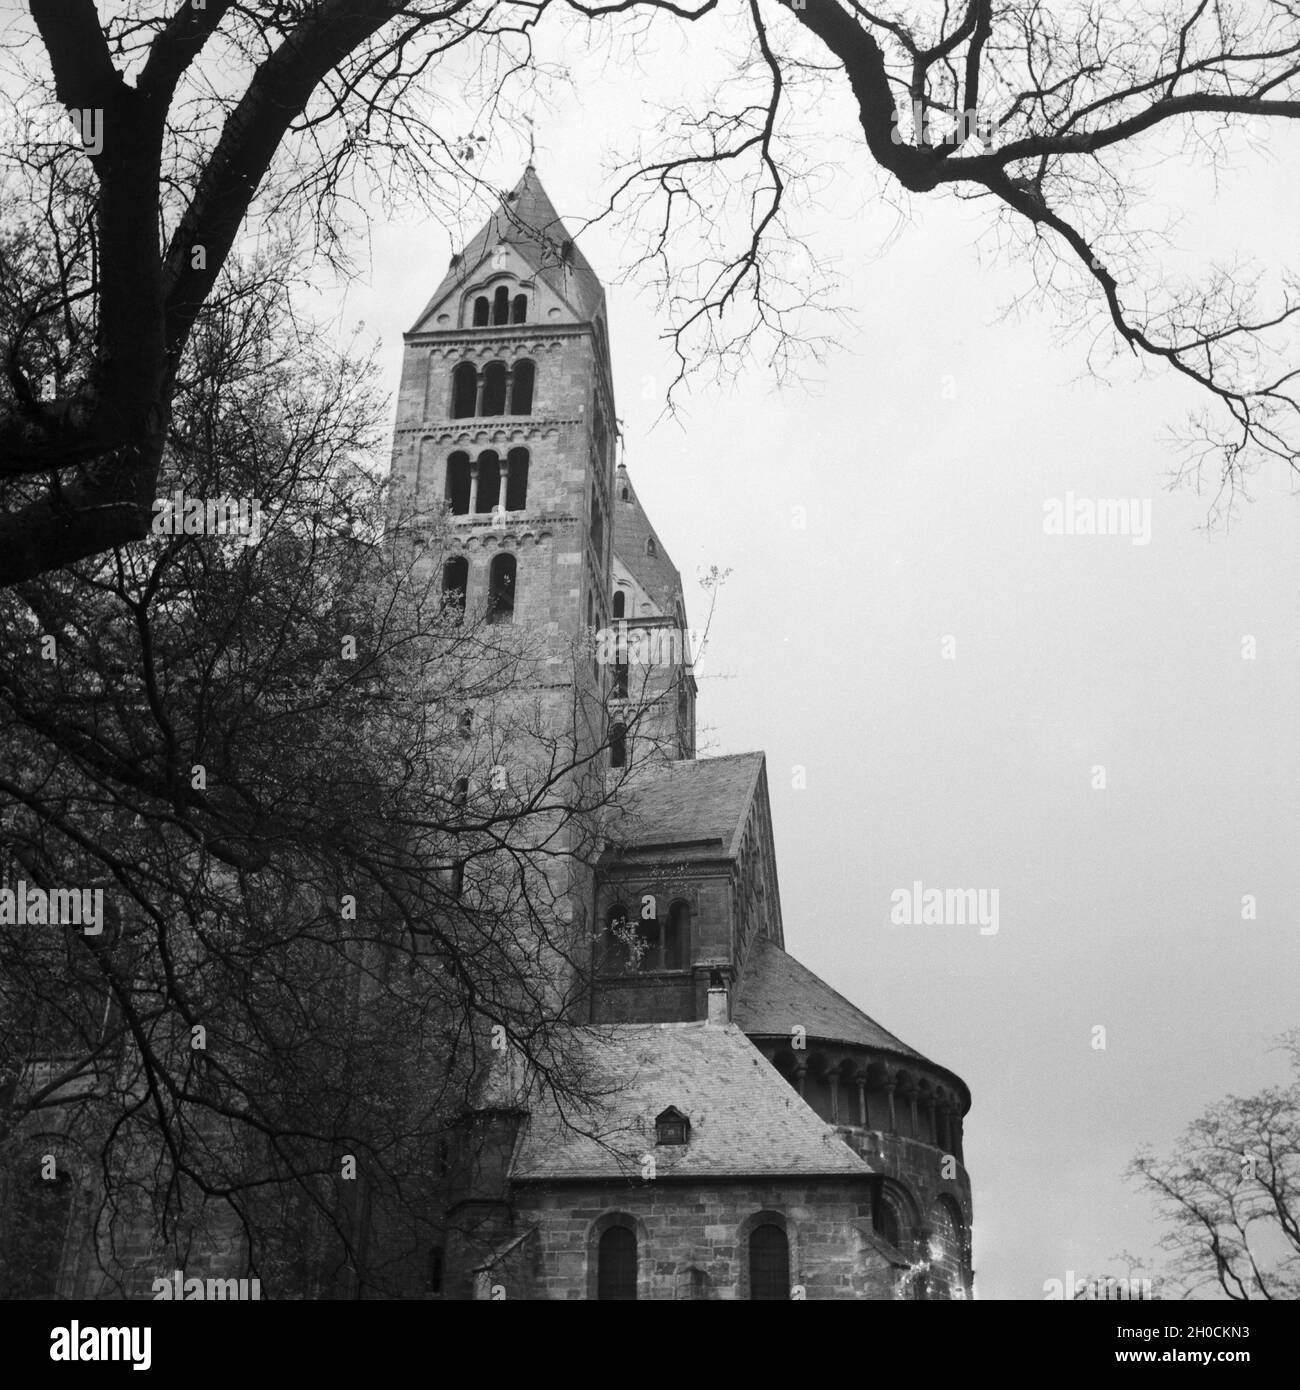 Der Chor mit den Doppeltürmen Am Hohen Dom zu Speyer, Deutschland 1930er Jahre. Coro con le torri gemelle della Cattedrale di Speyer, Germania 1930s. Foto Stock